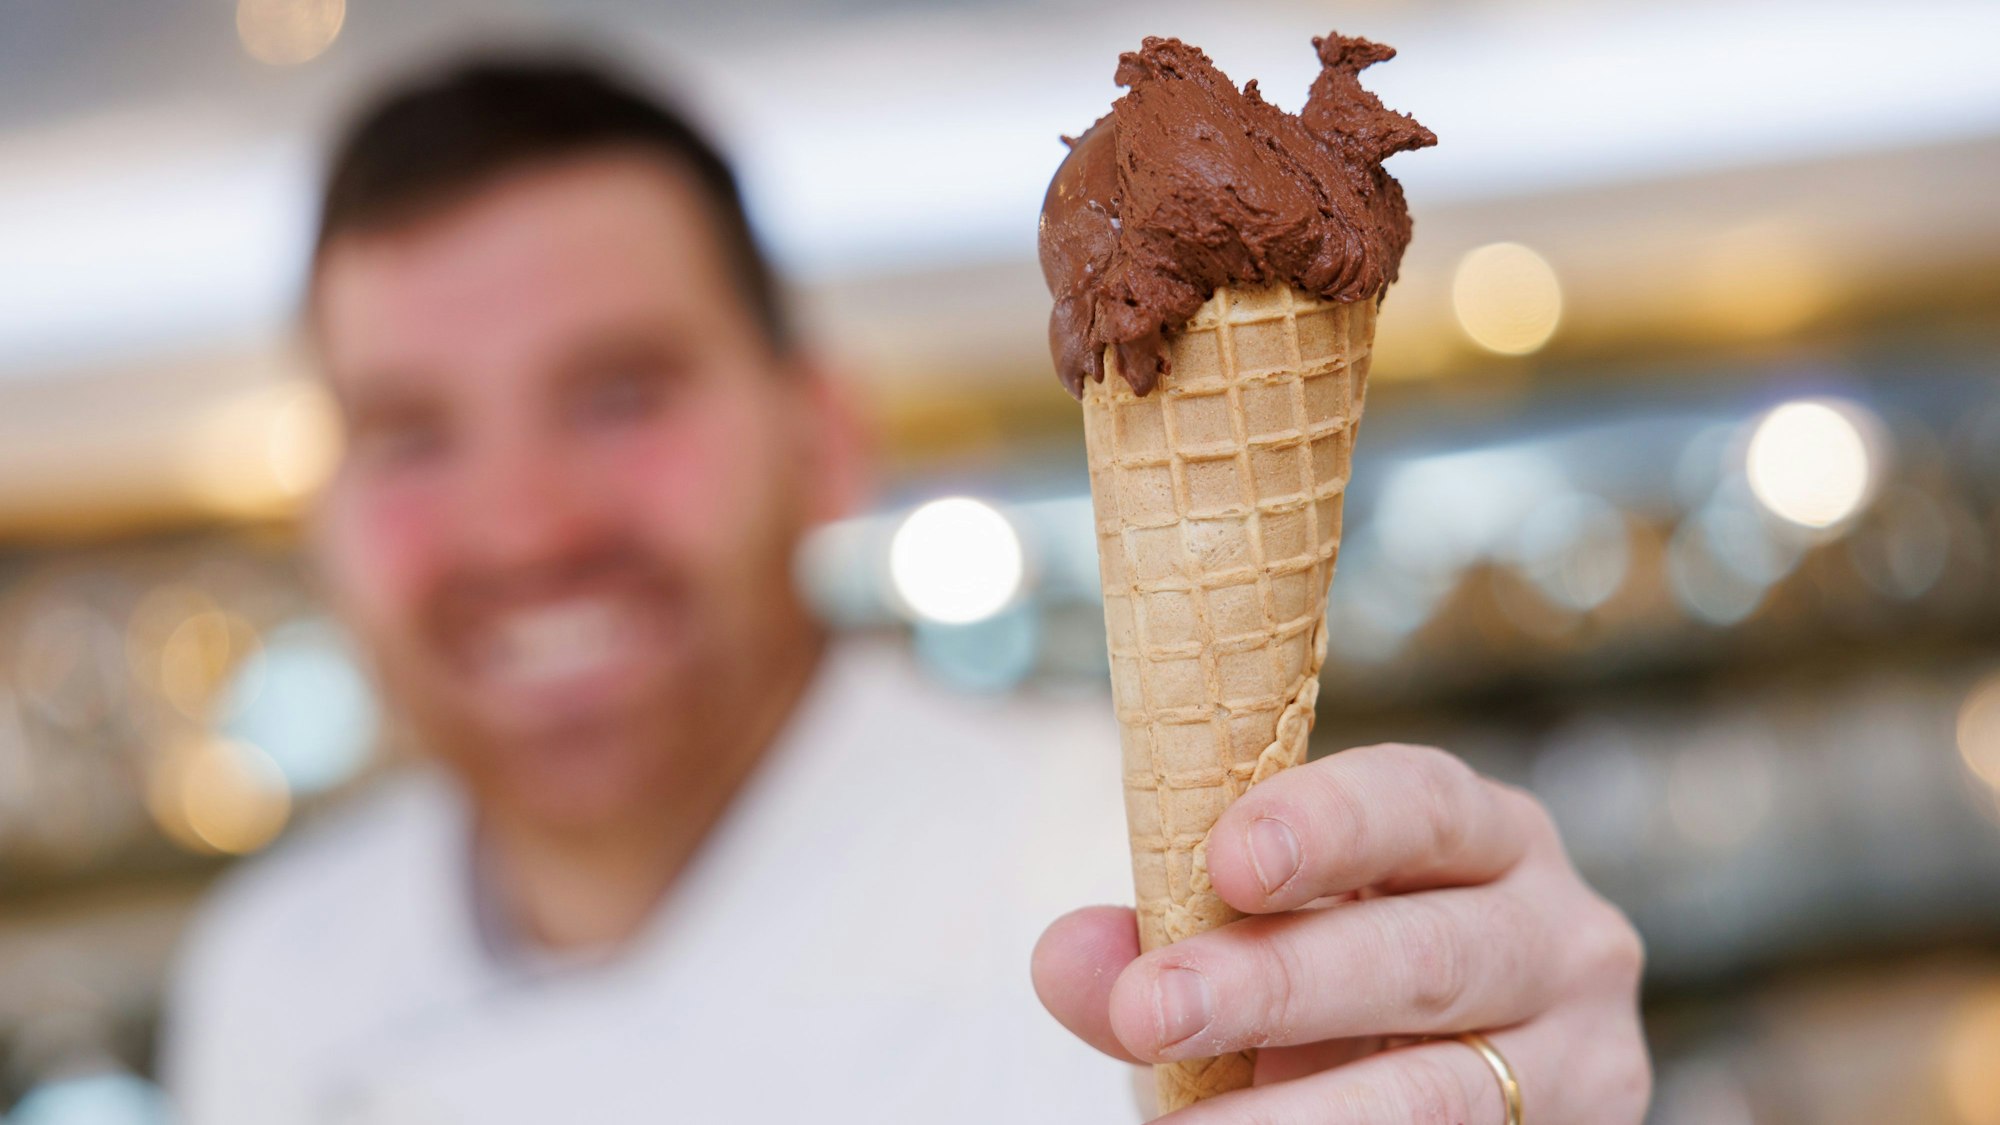 Der Eismacher Luca de Rocco hält in seinem Eiscafé eine Waffeltüte mit einer Kugel veganem Schokoladeneis in der Hand.